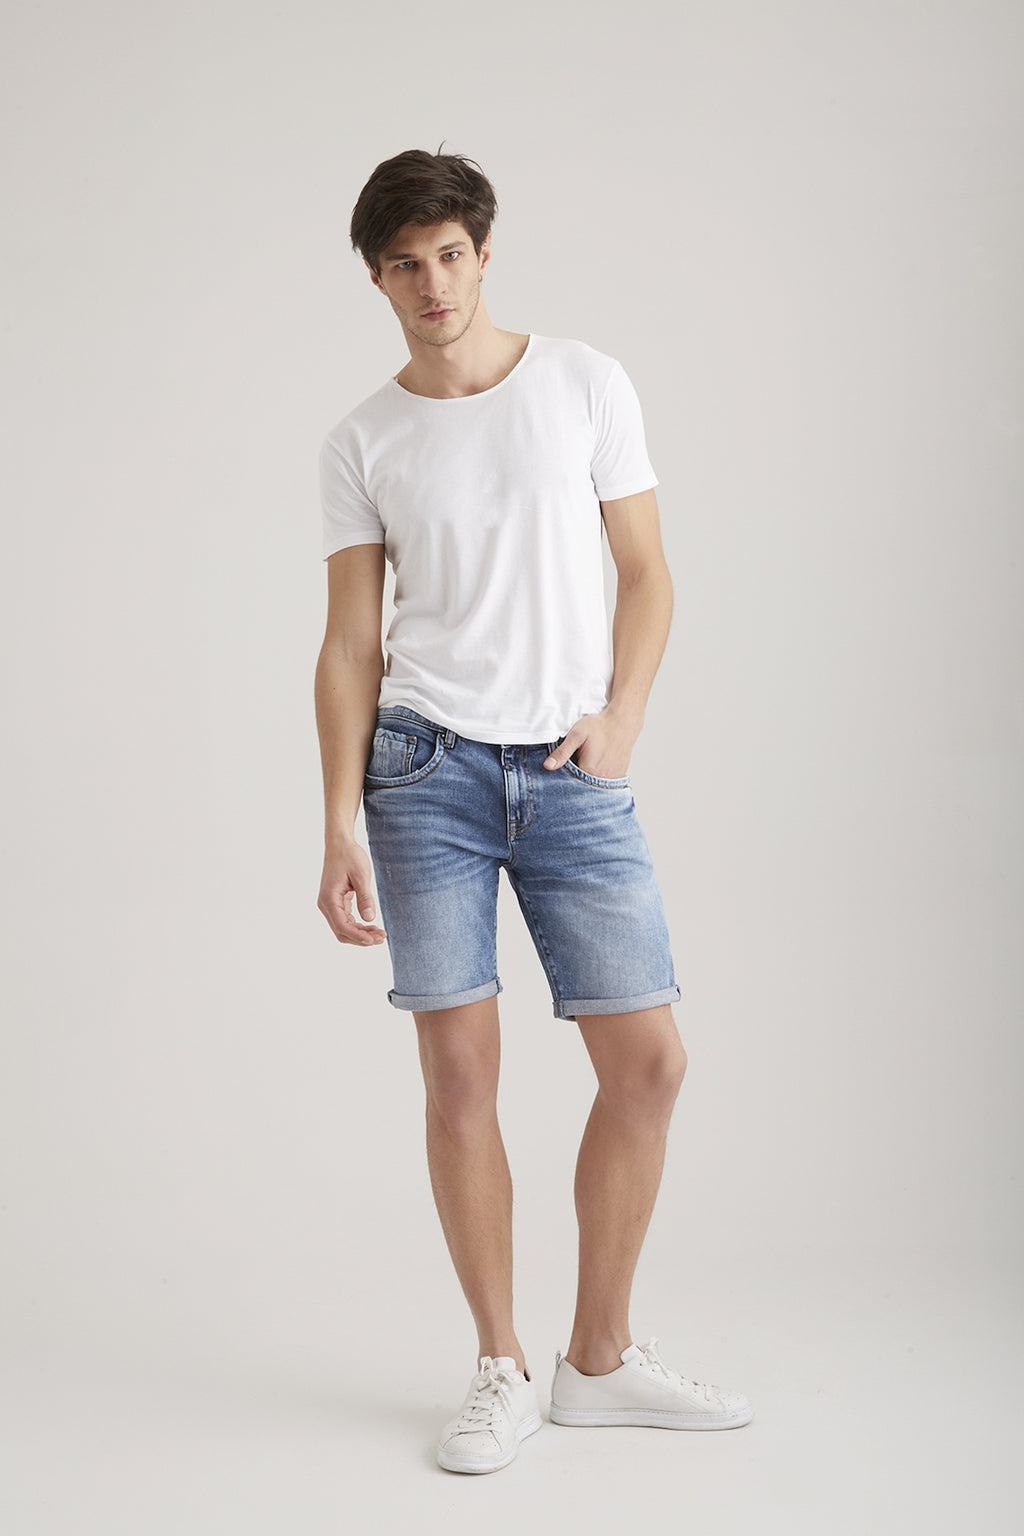 C.O.J Shorts für Herren | Emporium Jeans